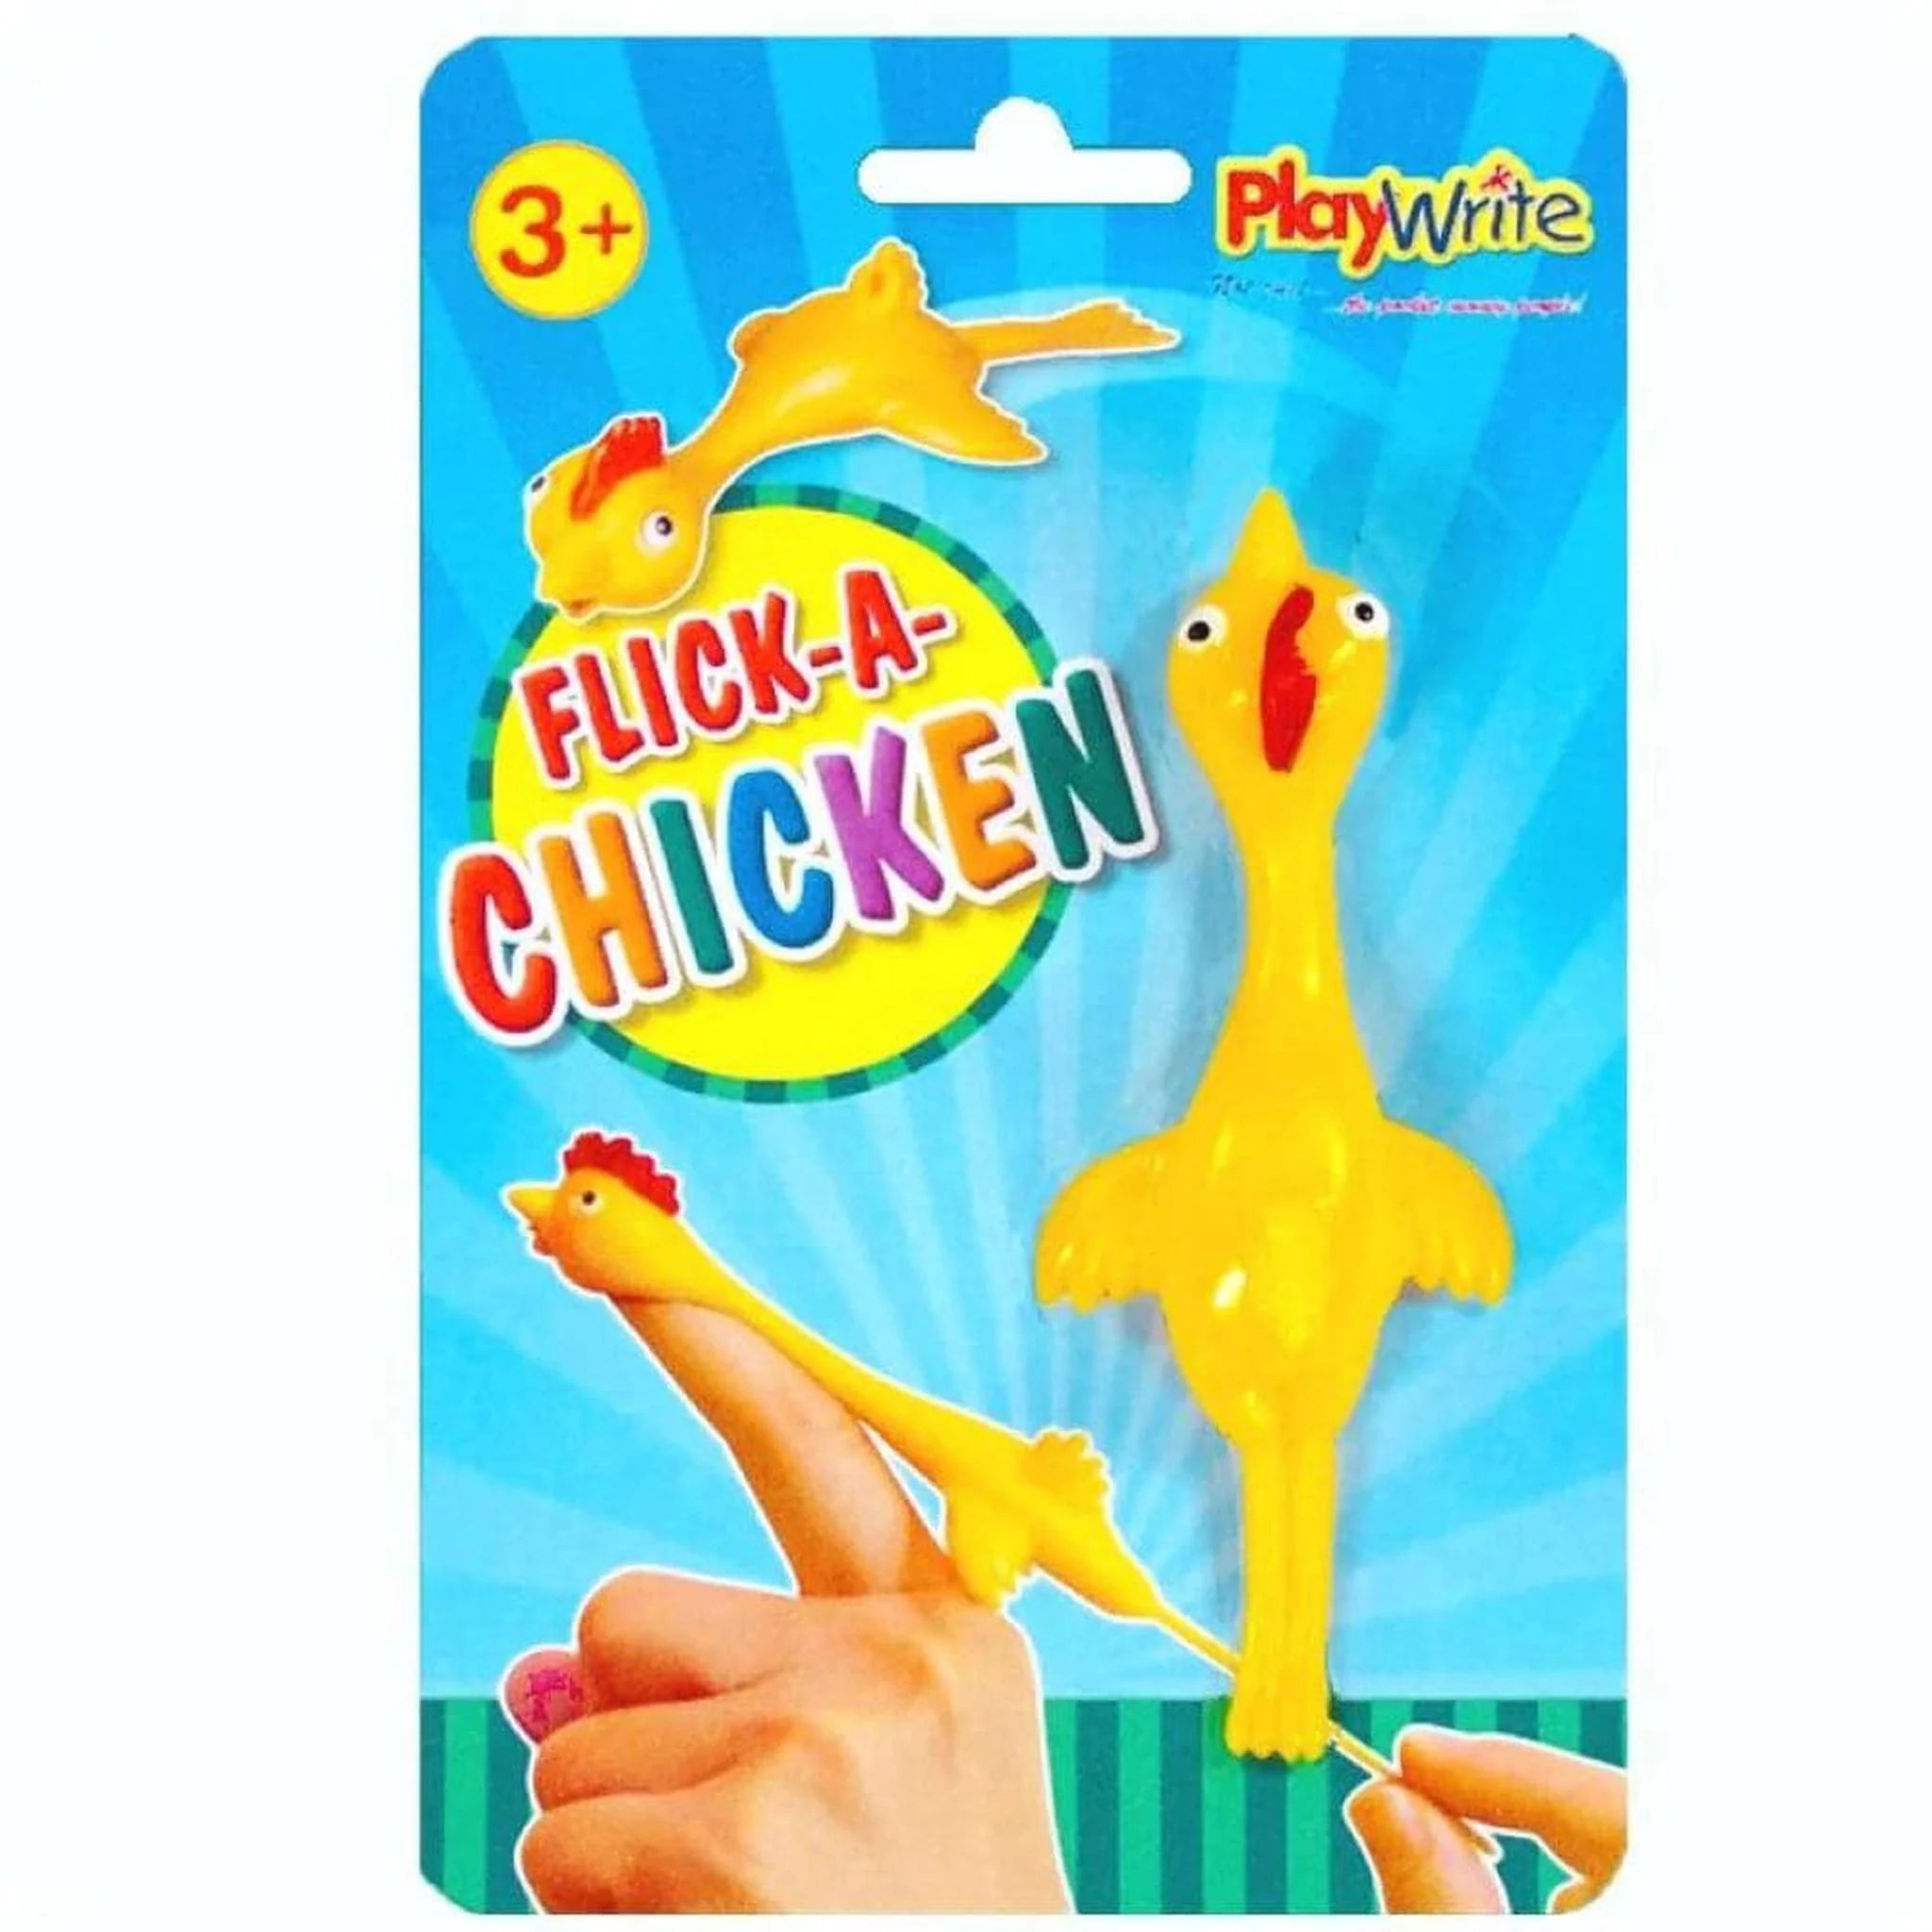 Flick-a-Chicken - Kids Party Craft